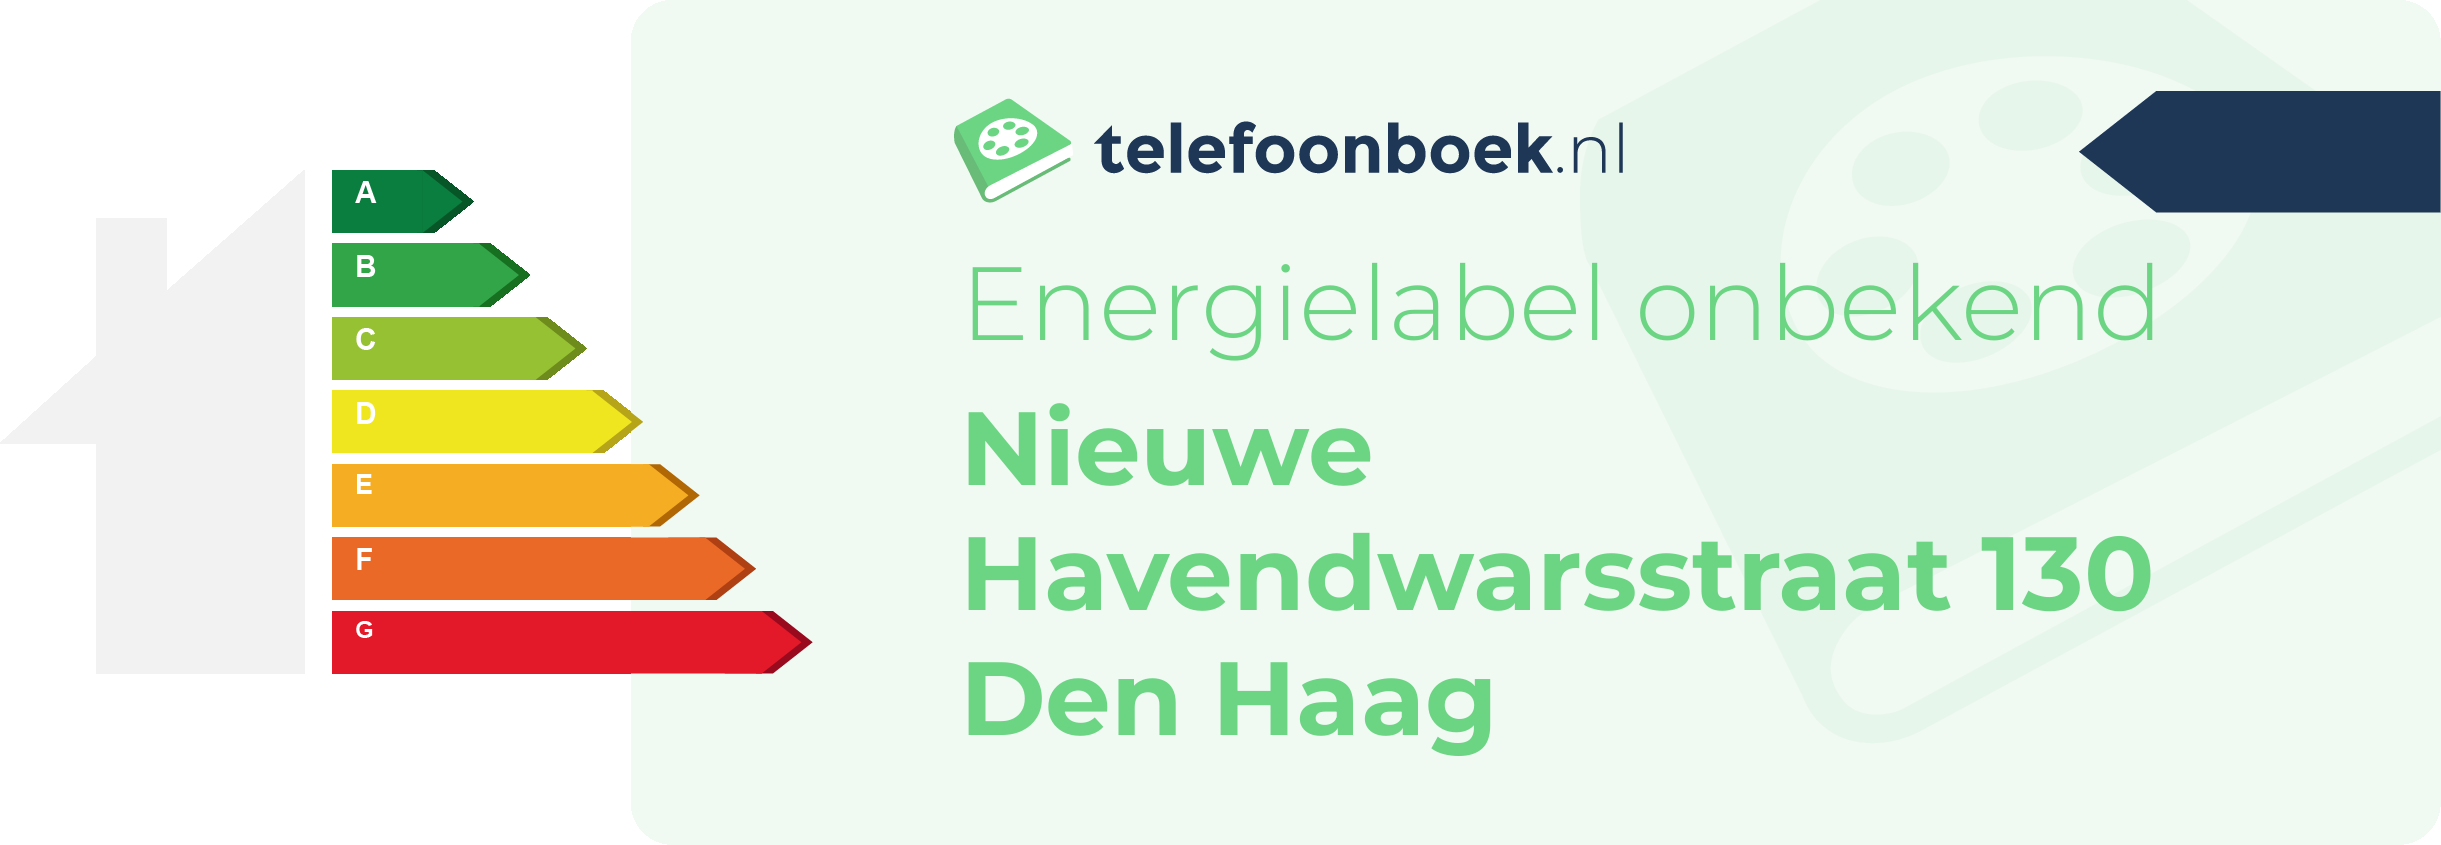 Energielabel Nieuwe Havendwarsstraat 130 Den Haag